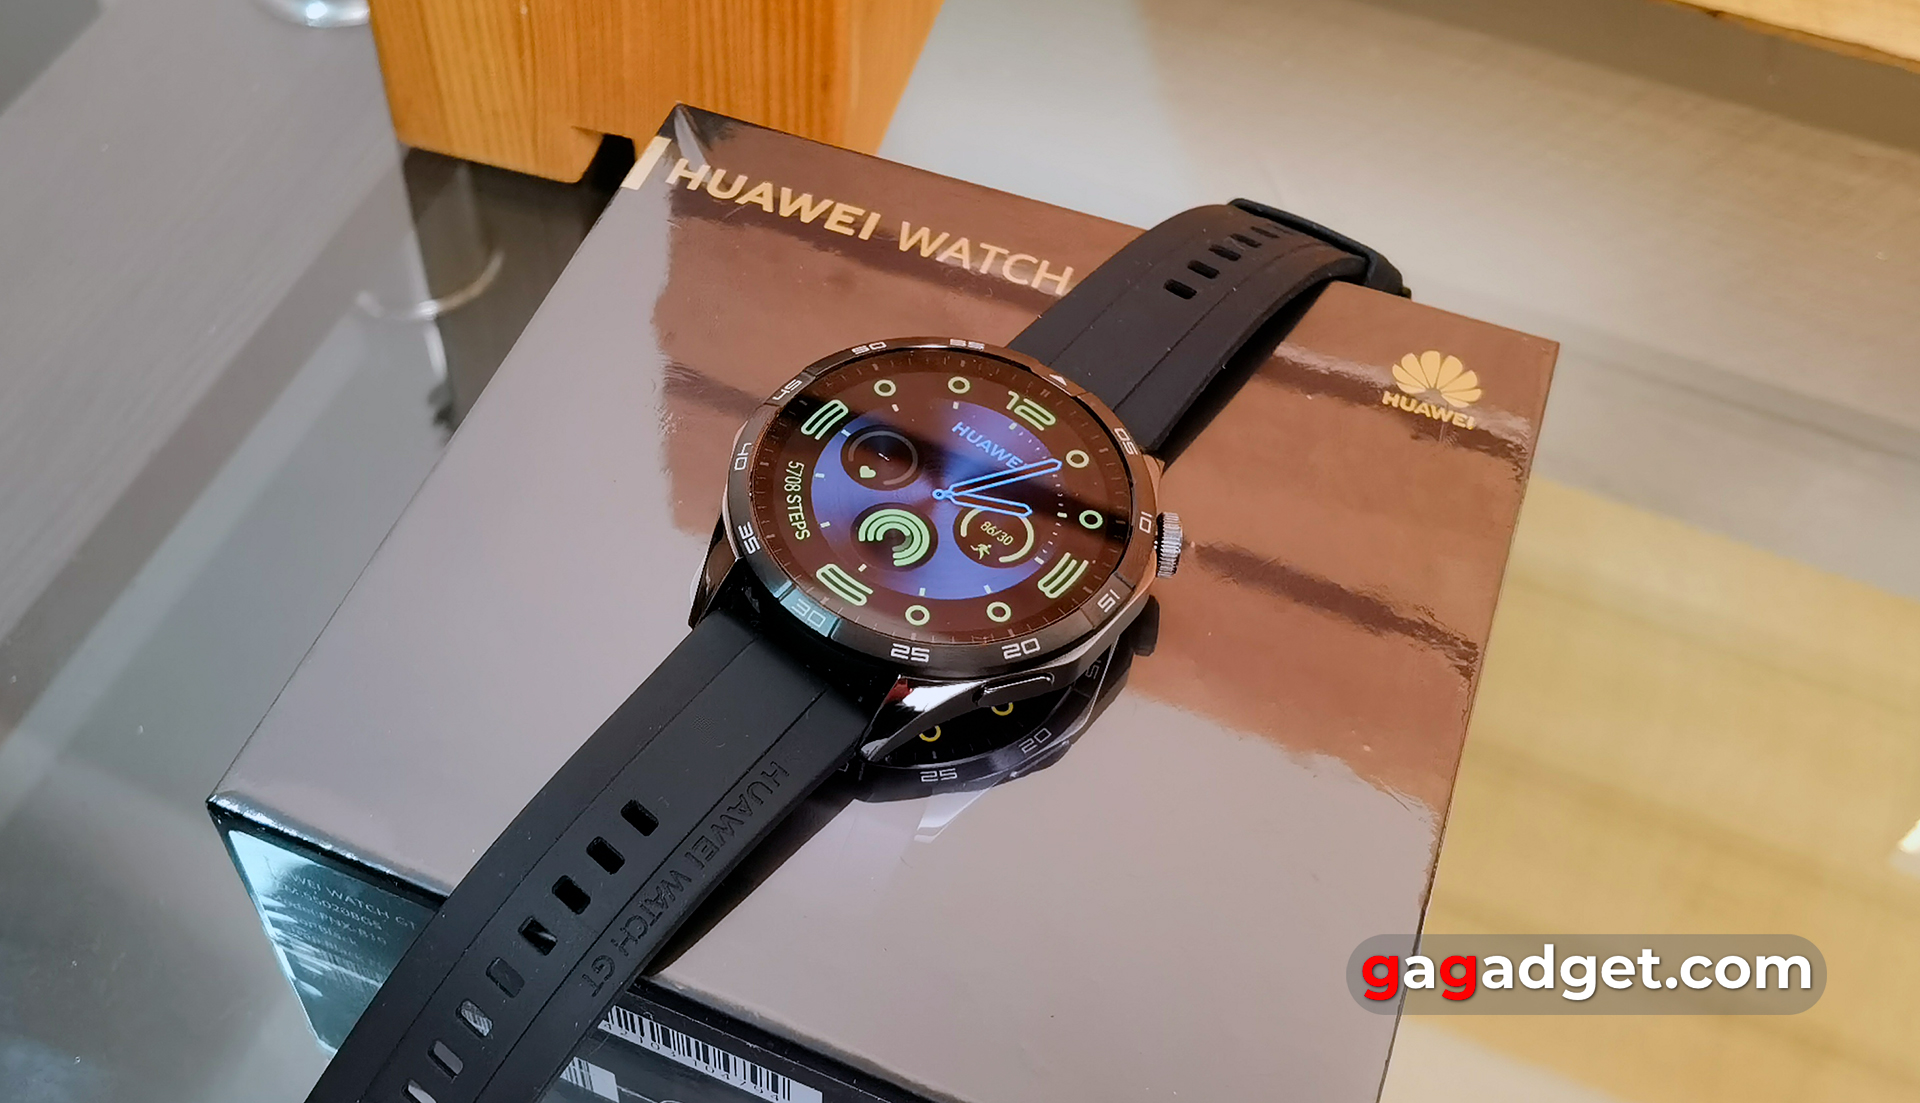 Огляд Huawei Watch GT 4